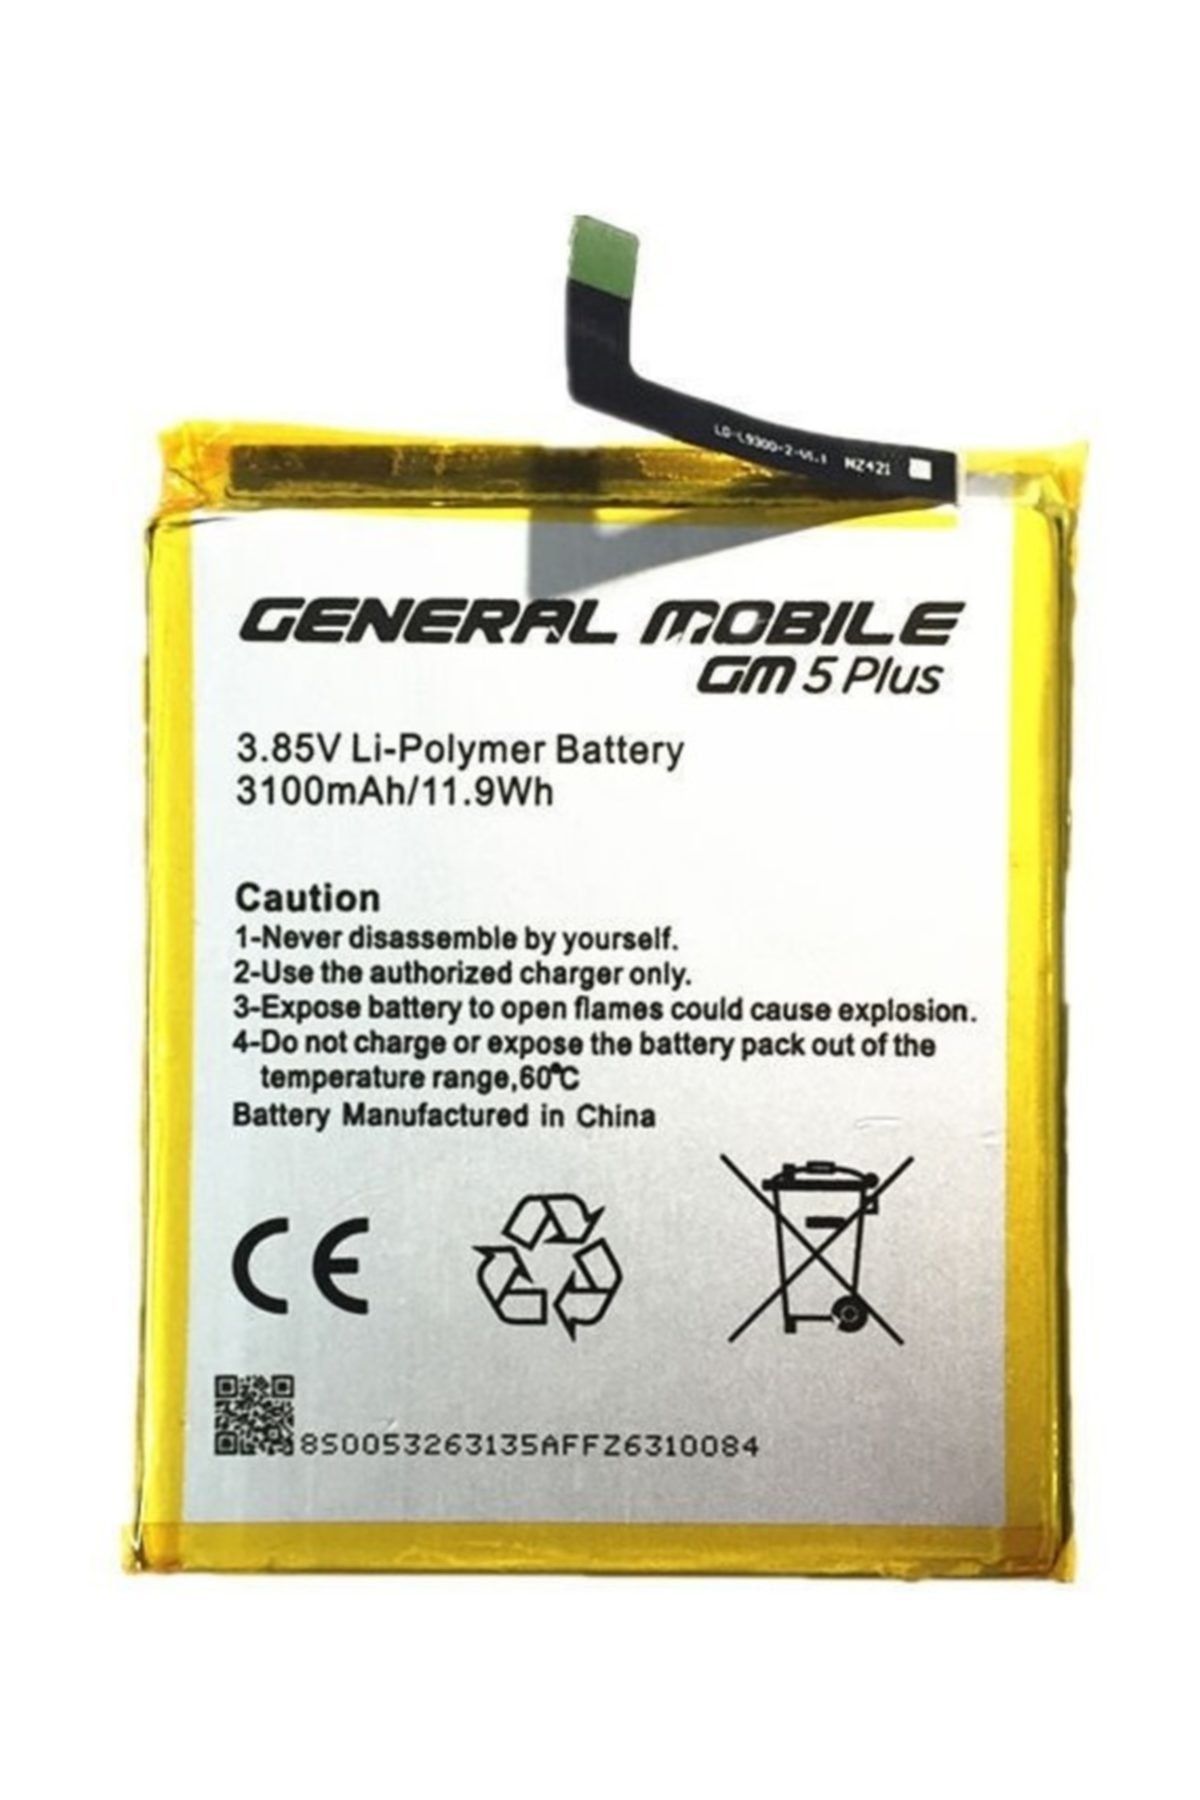 General Mobile Technophone General Mobil Gm5 Plus Batarya Pil